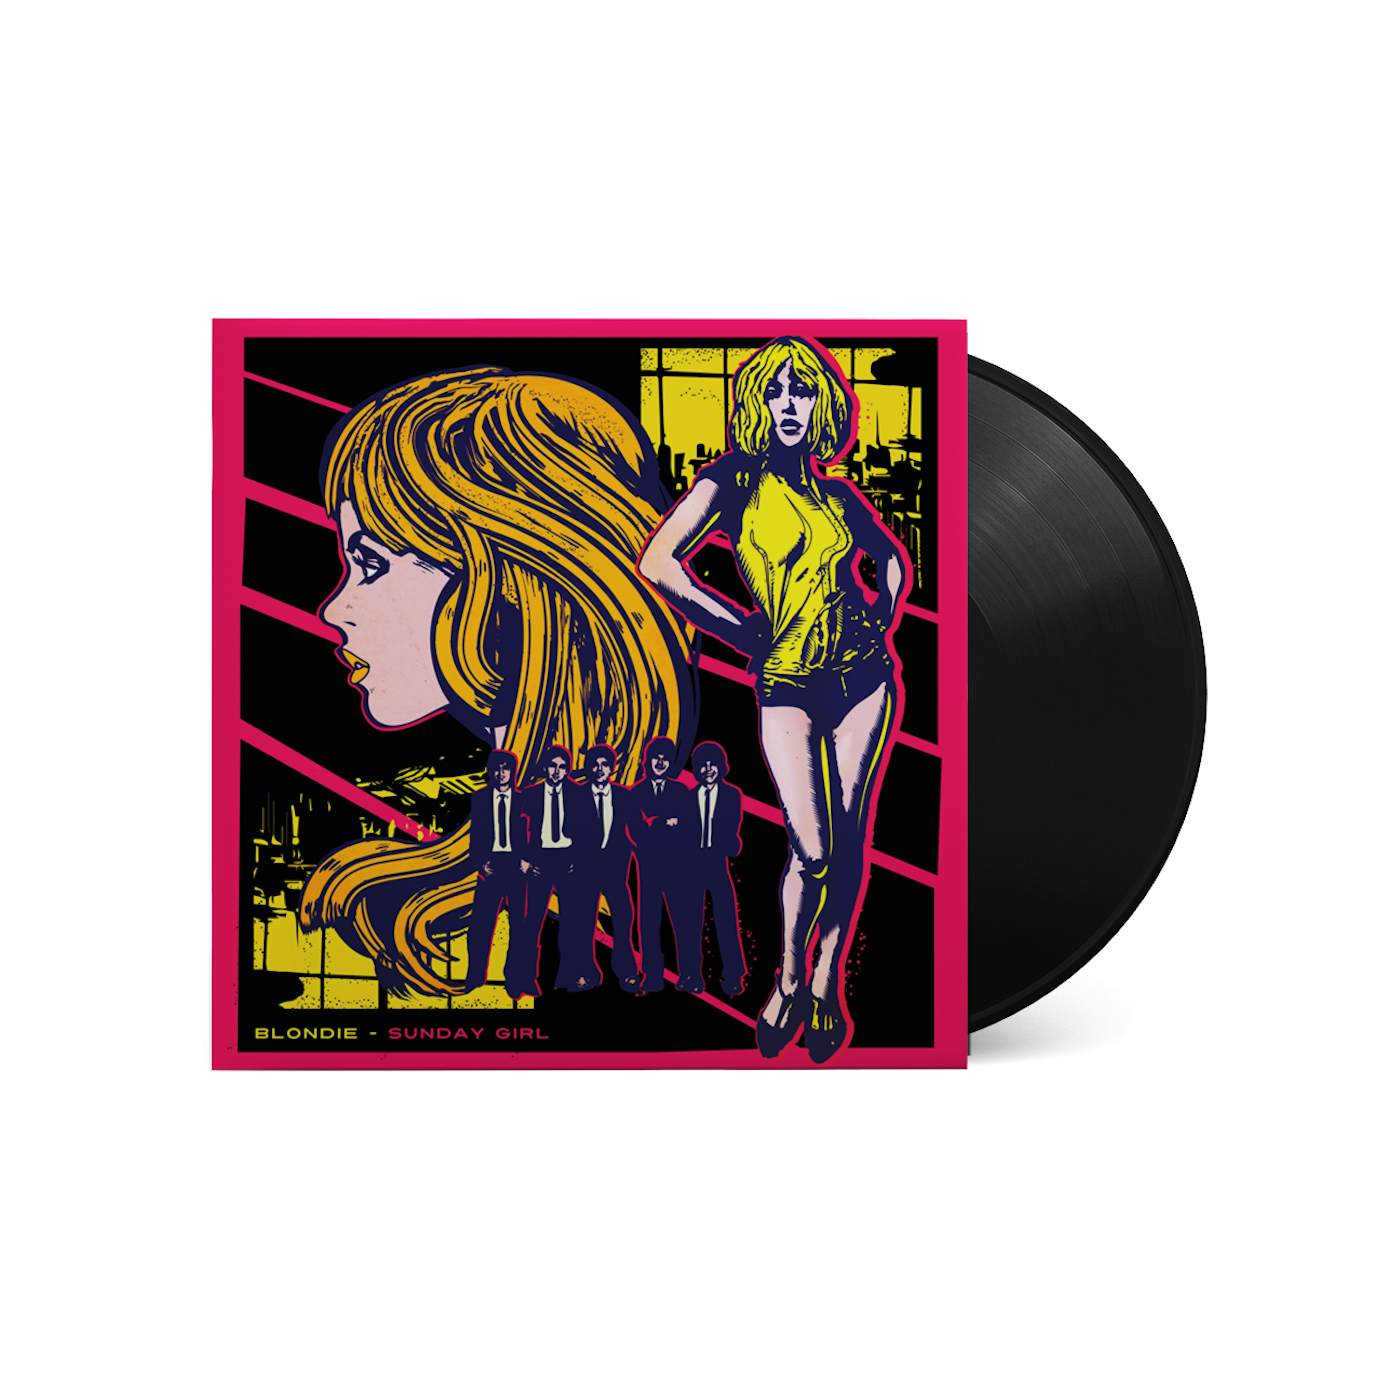 Blondie - 'Sunday Girl' Vinyl Single (Exclusive Sleeve Art)